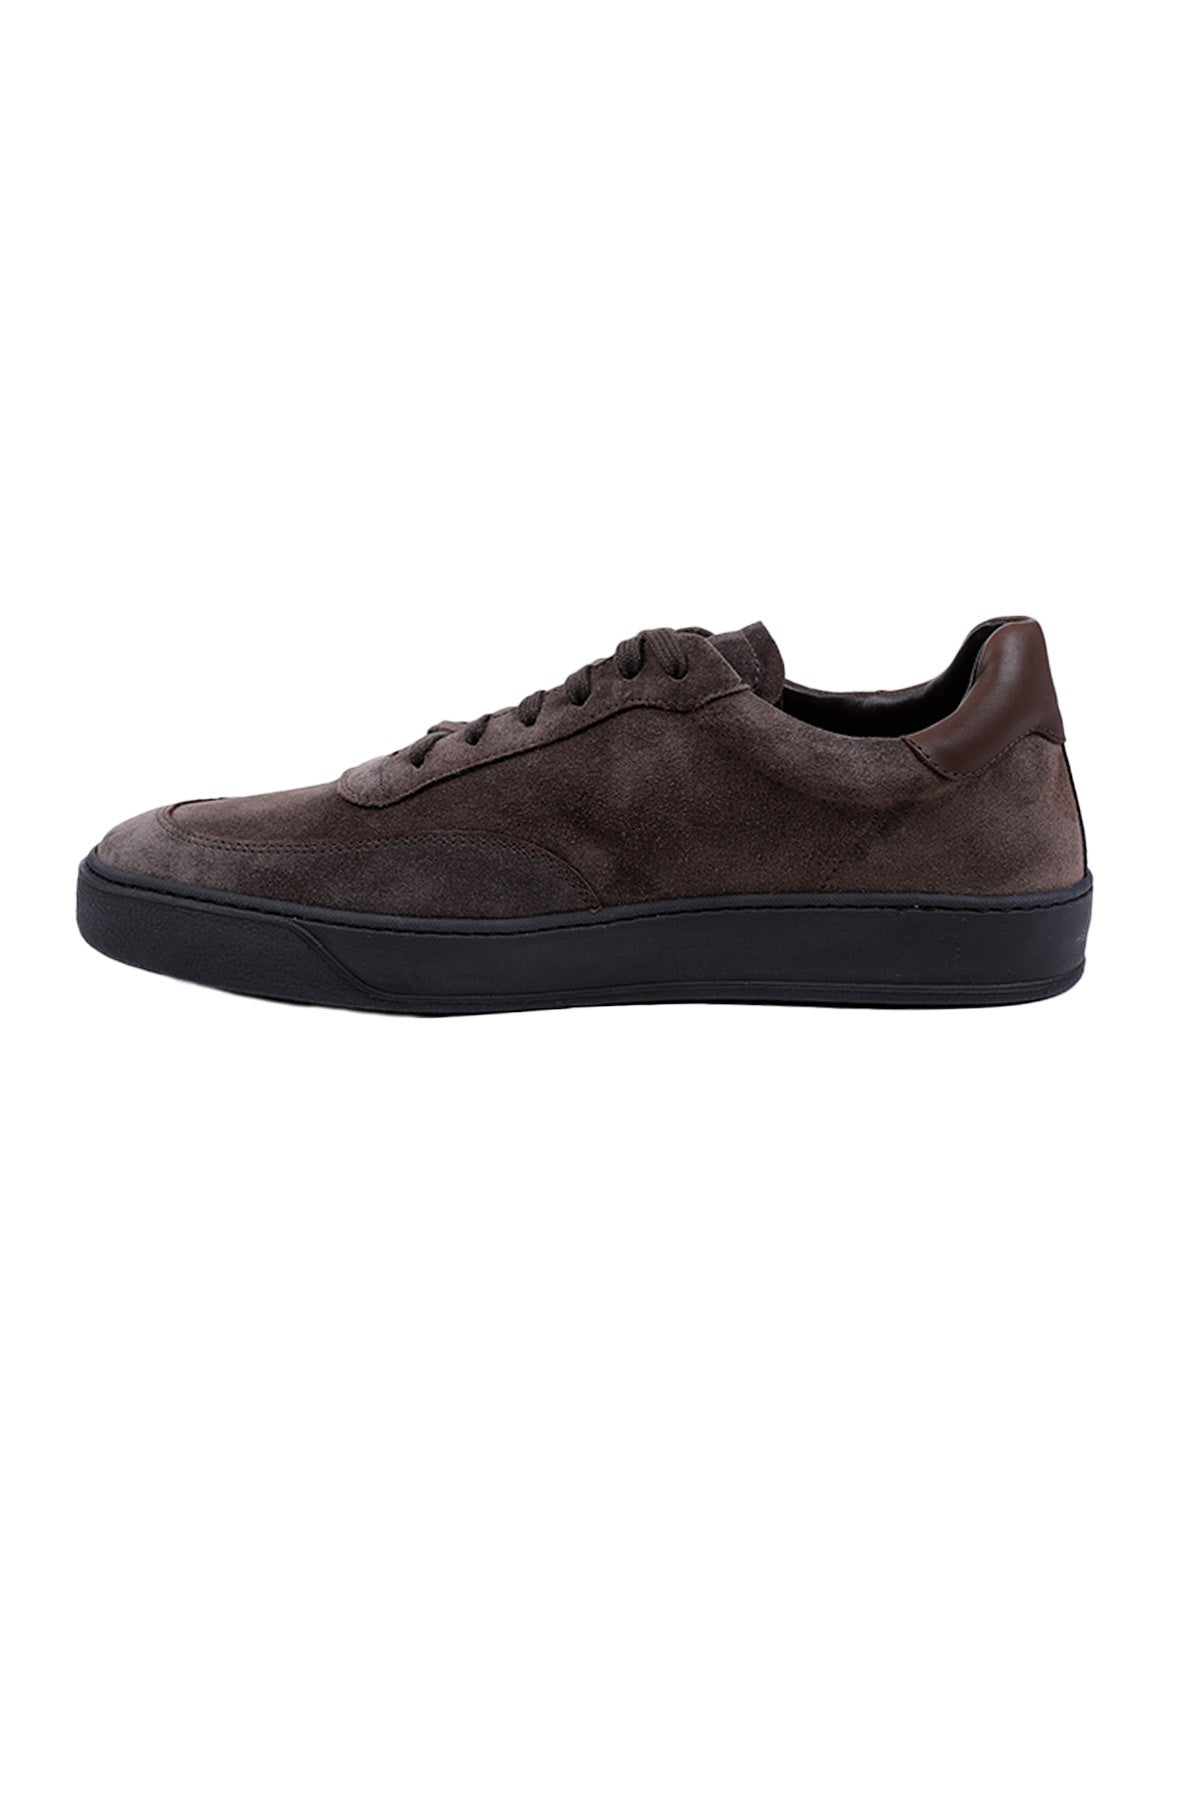 Henderson Mitch Süet Casual Sneaker Ayakkabı-Libas Trendy Fashion Store